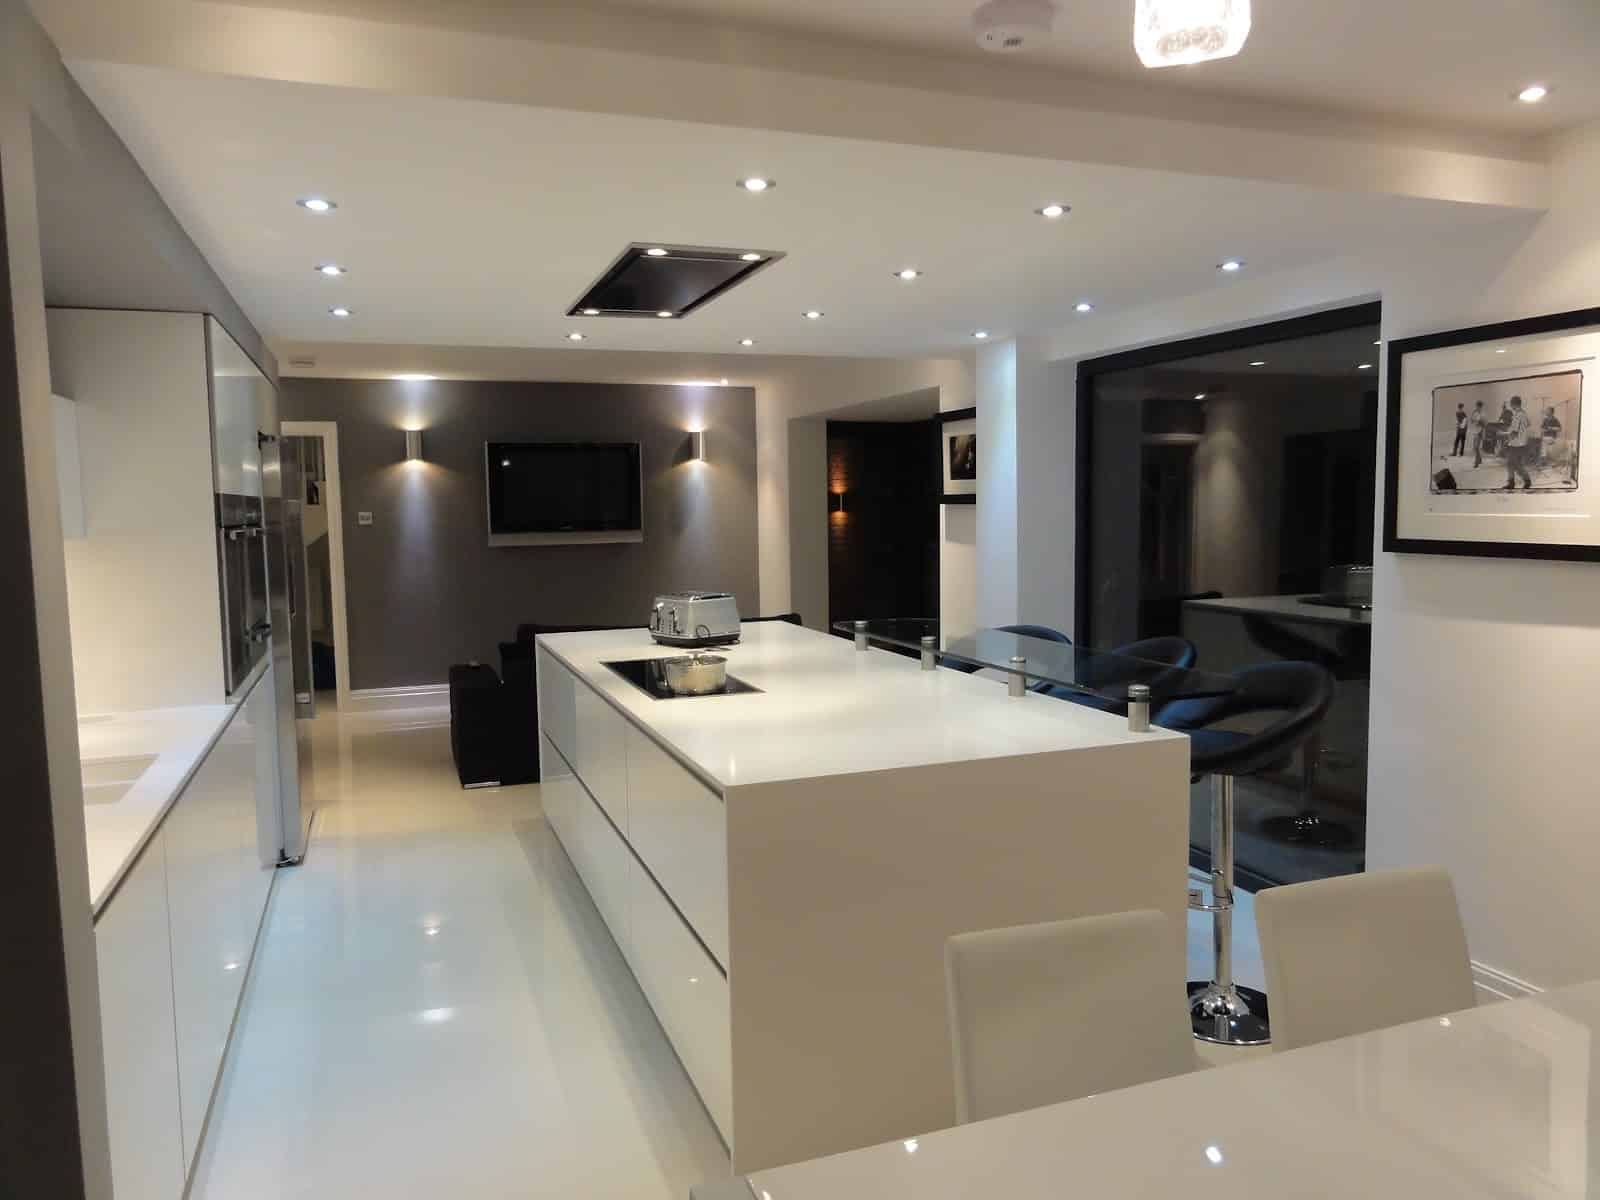 Mr & Mrs Woods - 2011 - Designer kitchen in White gloss